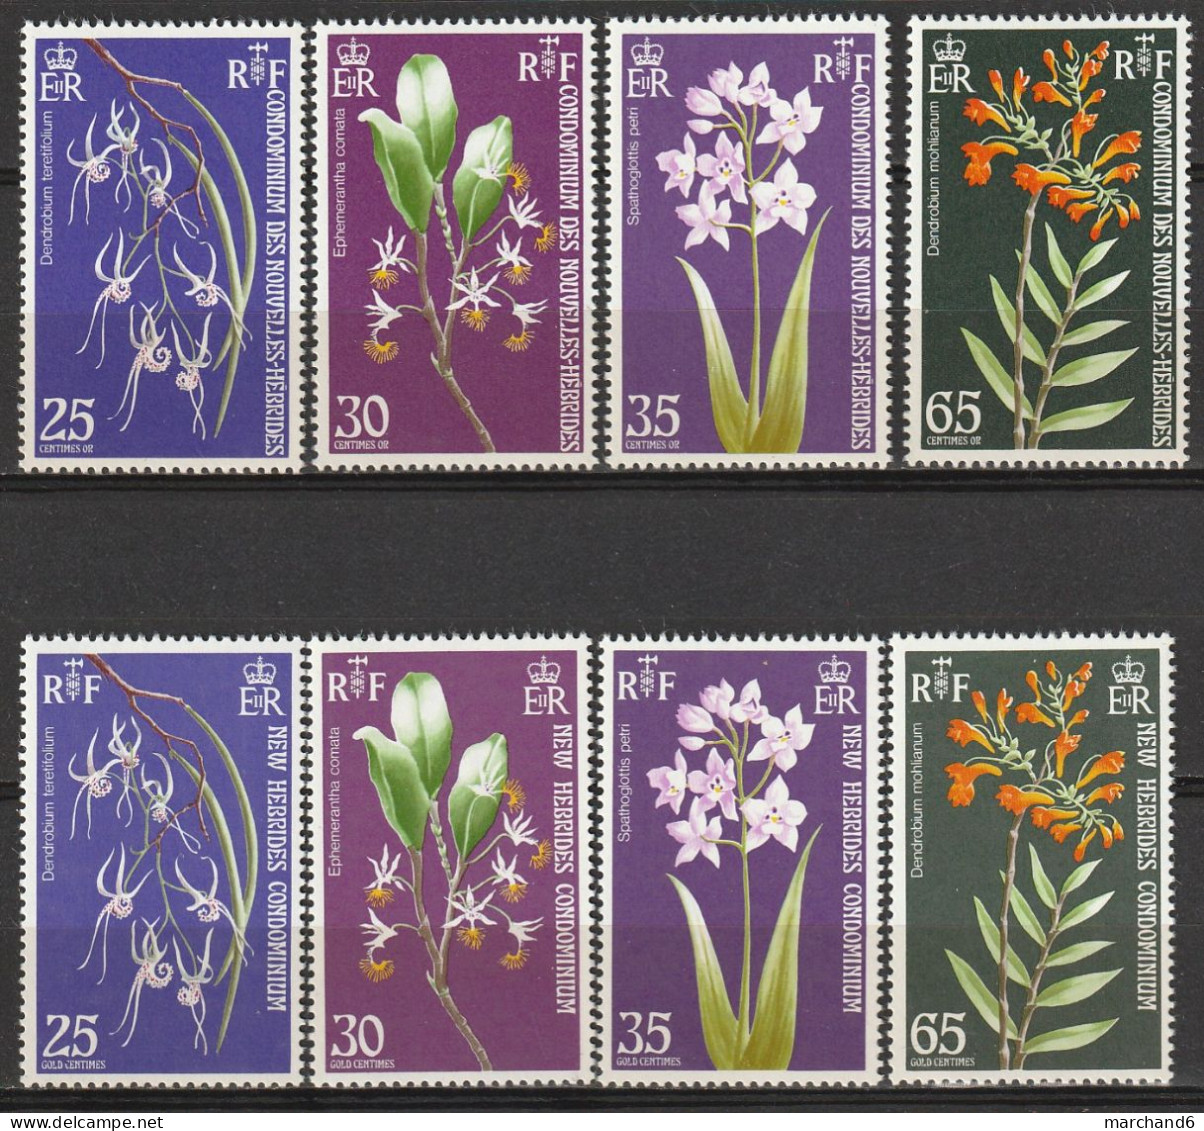 Nouvelles Hébrides Orchidées 1973 France Anglaise N°358/365 Neuf** - Neufs